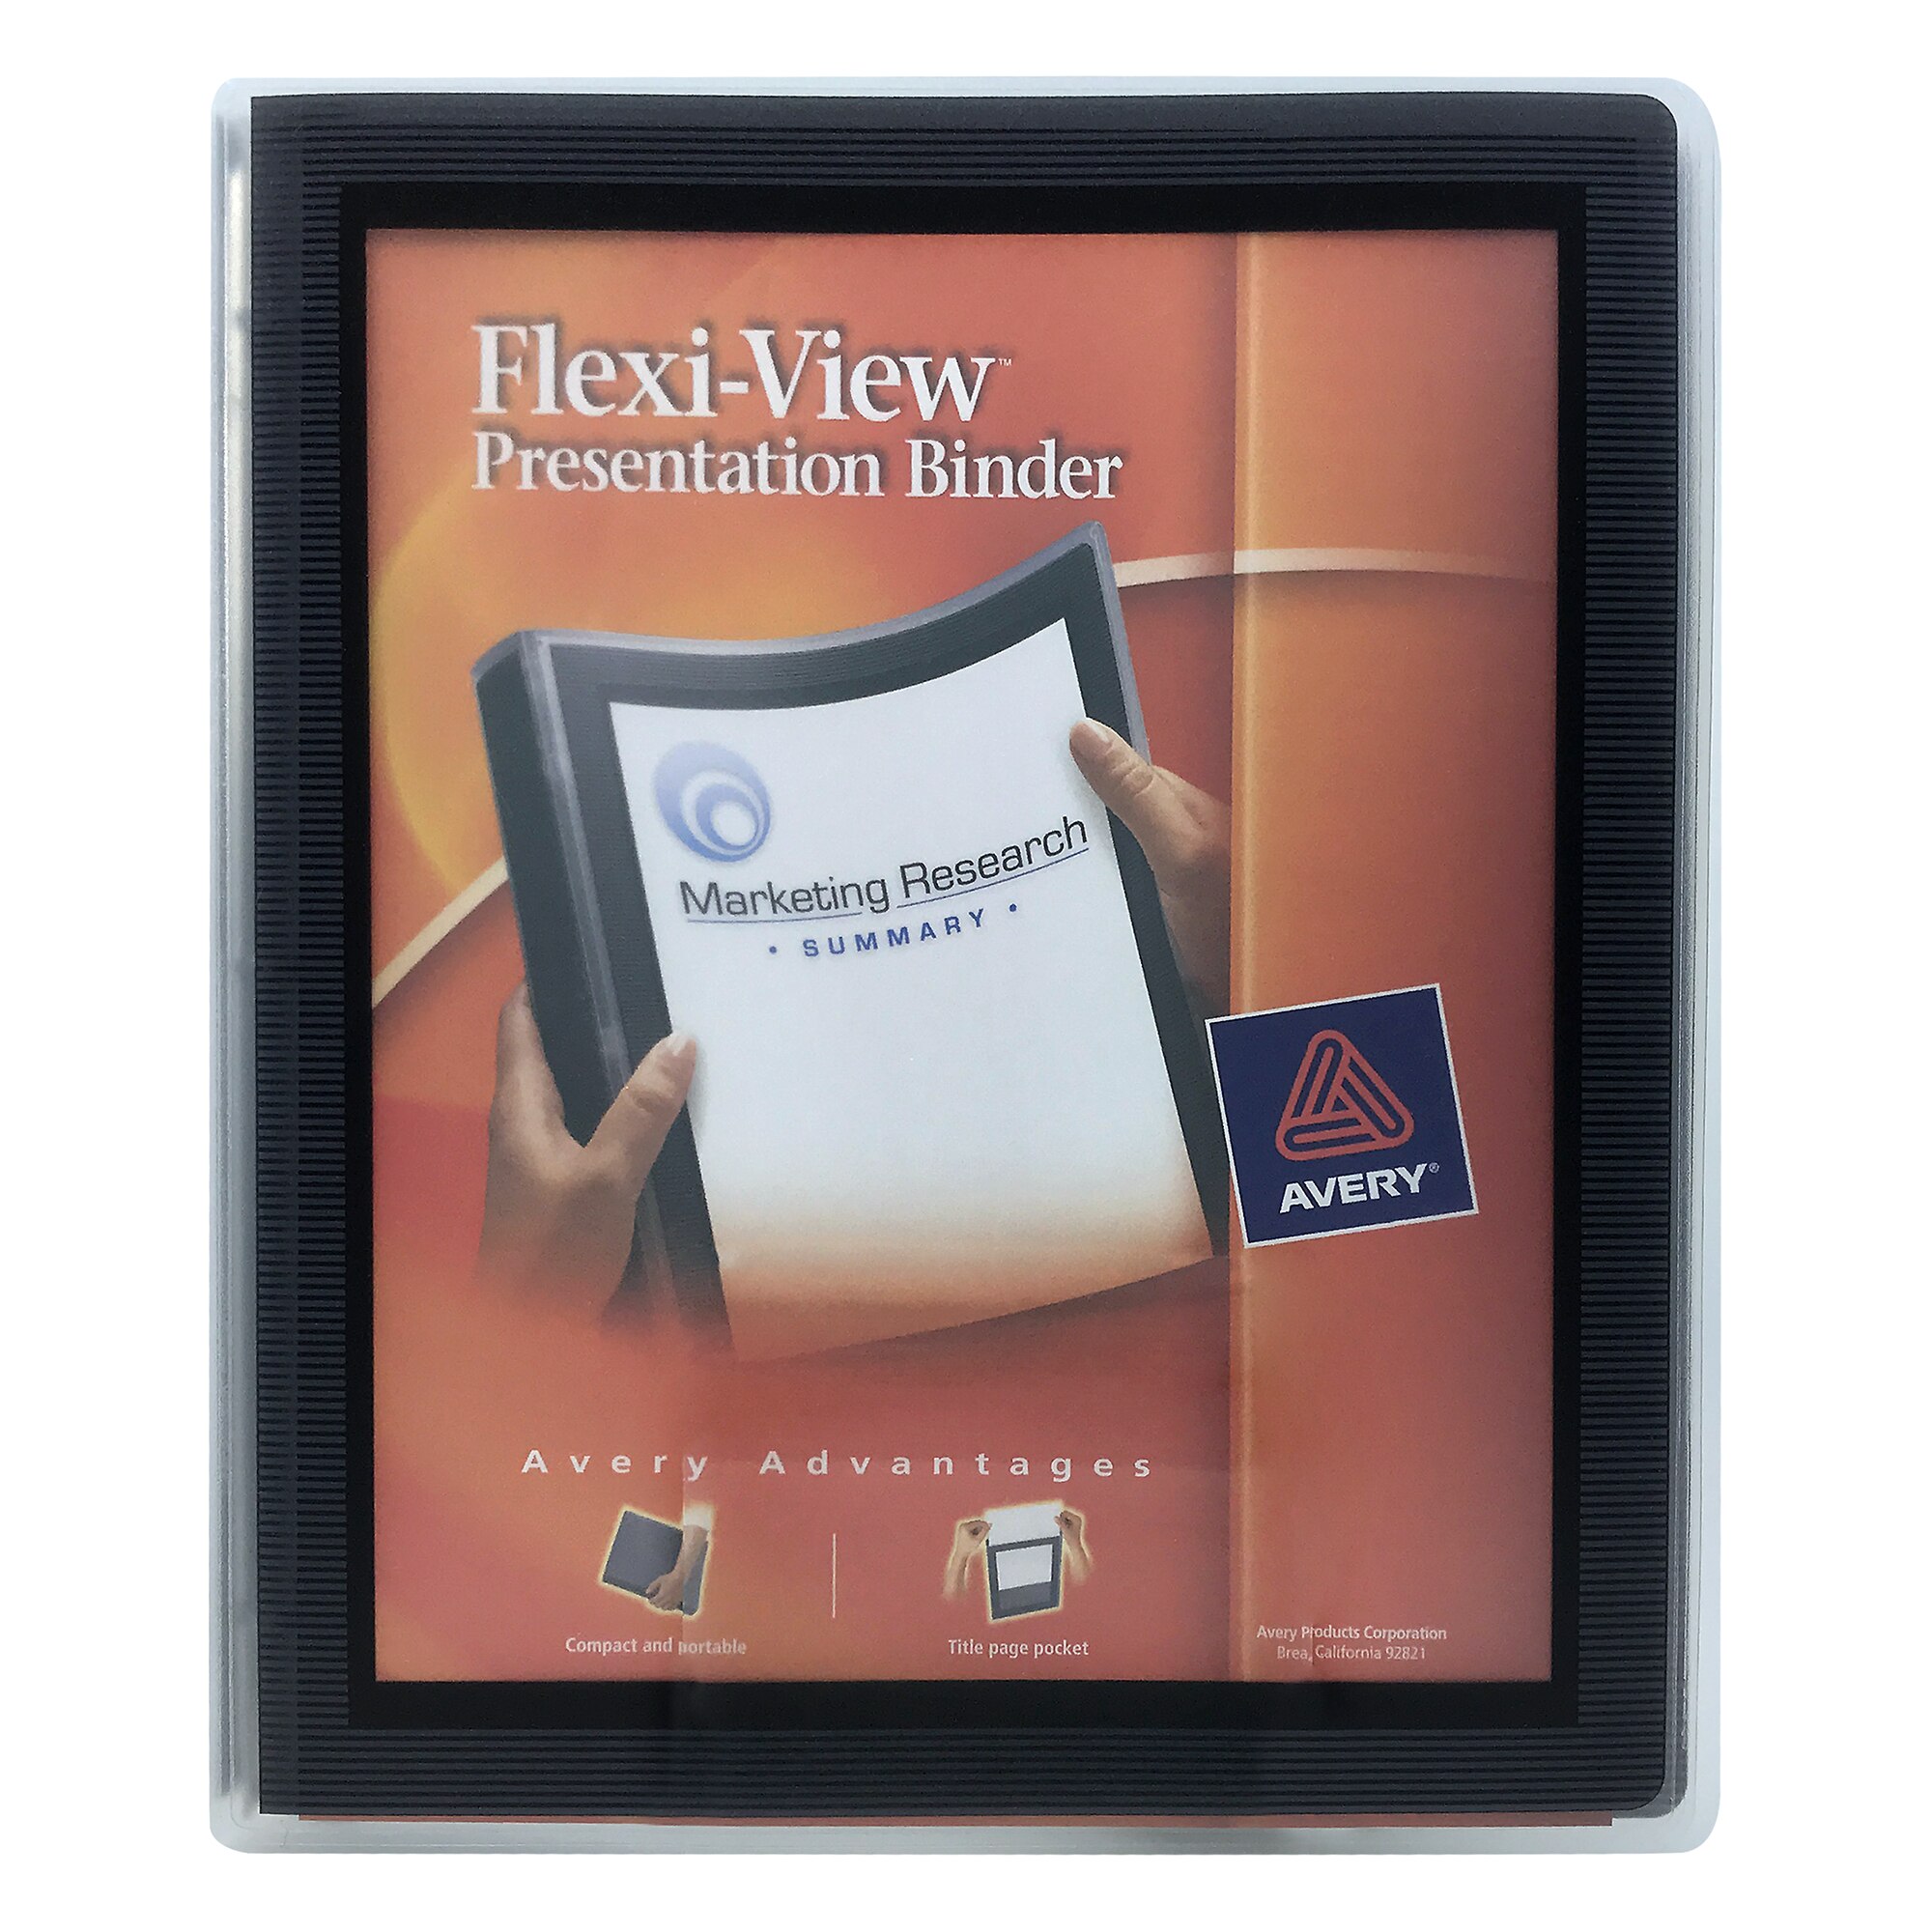 Flexview 12 Presentation Binder